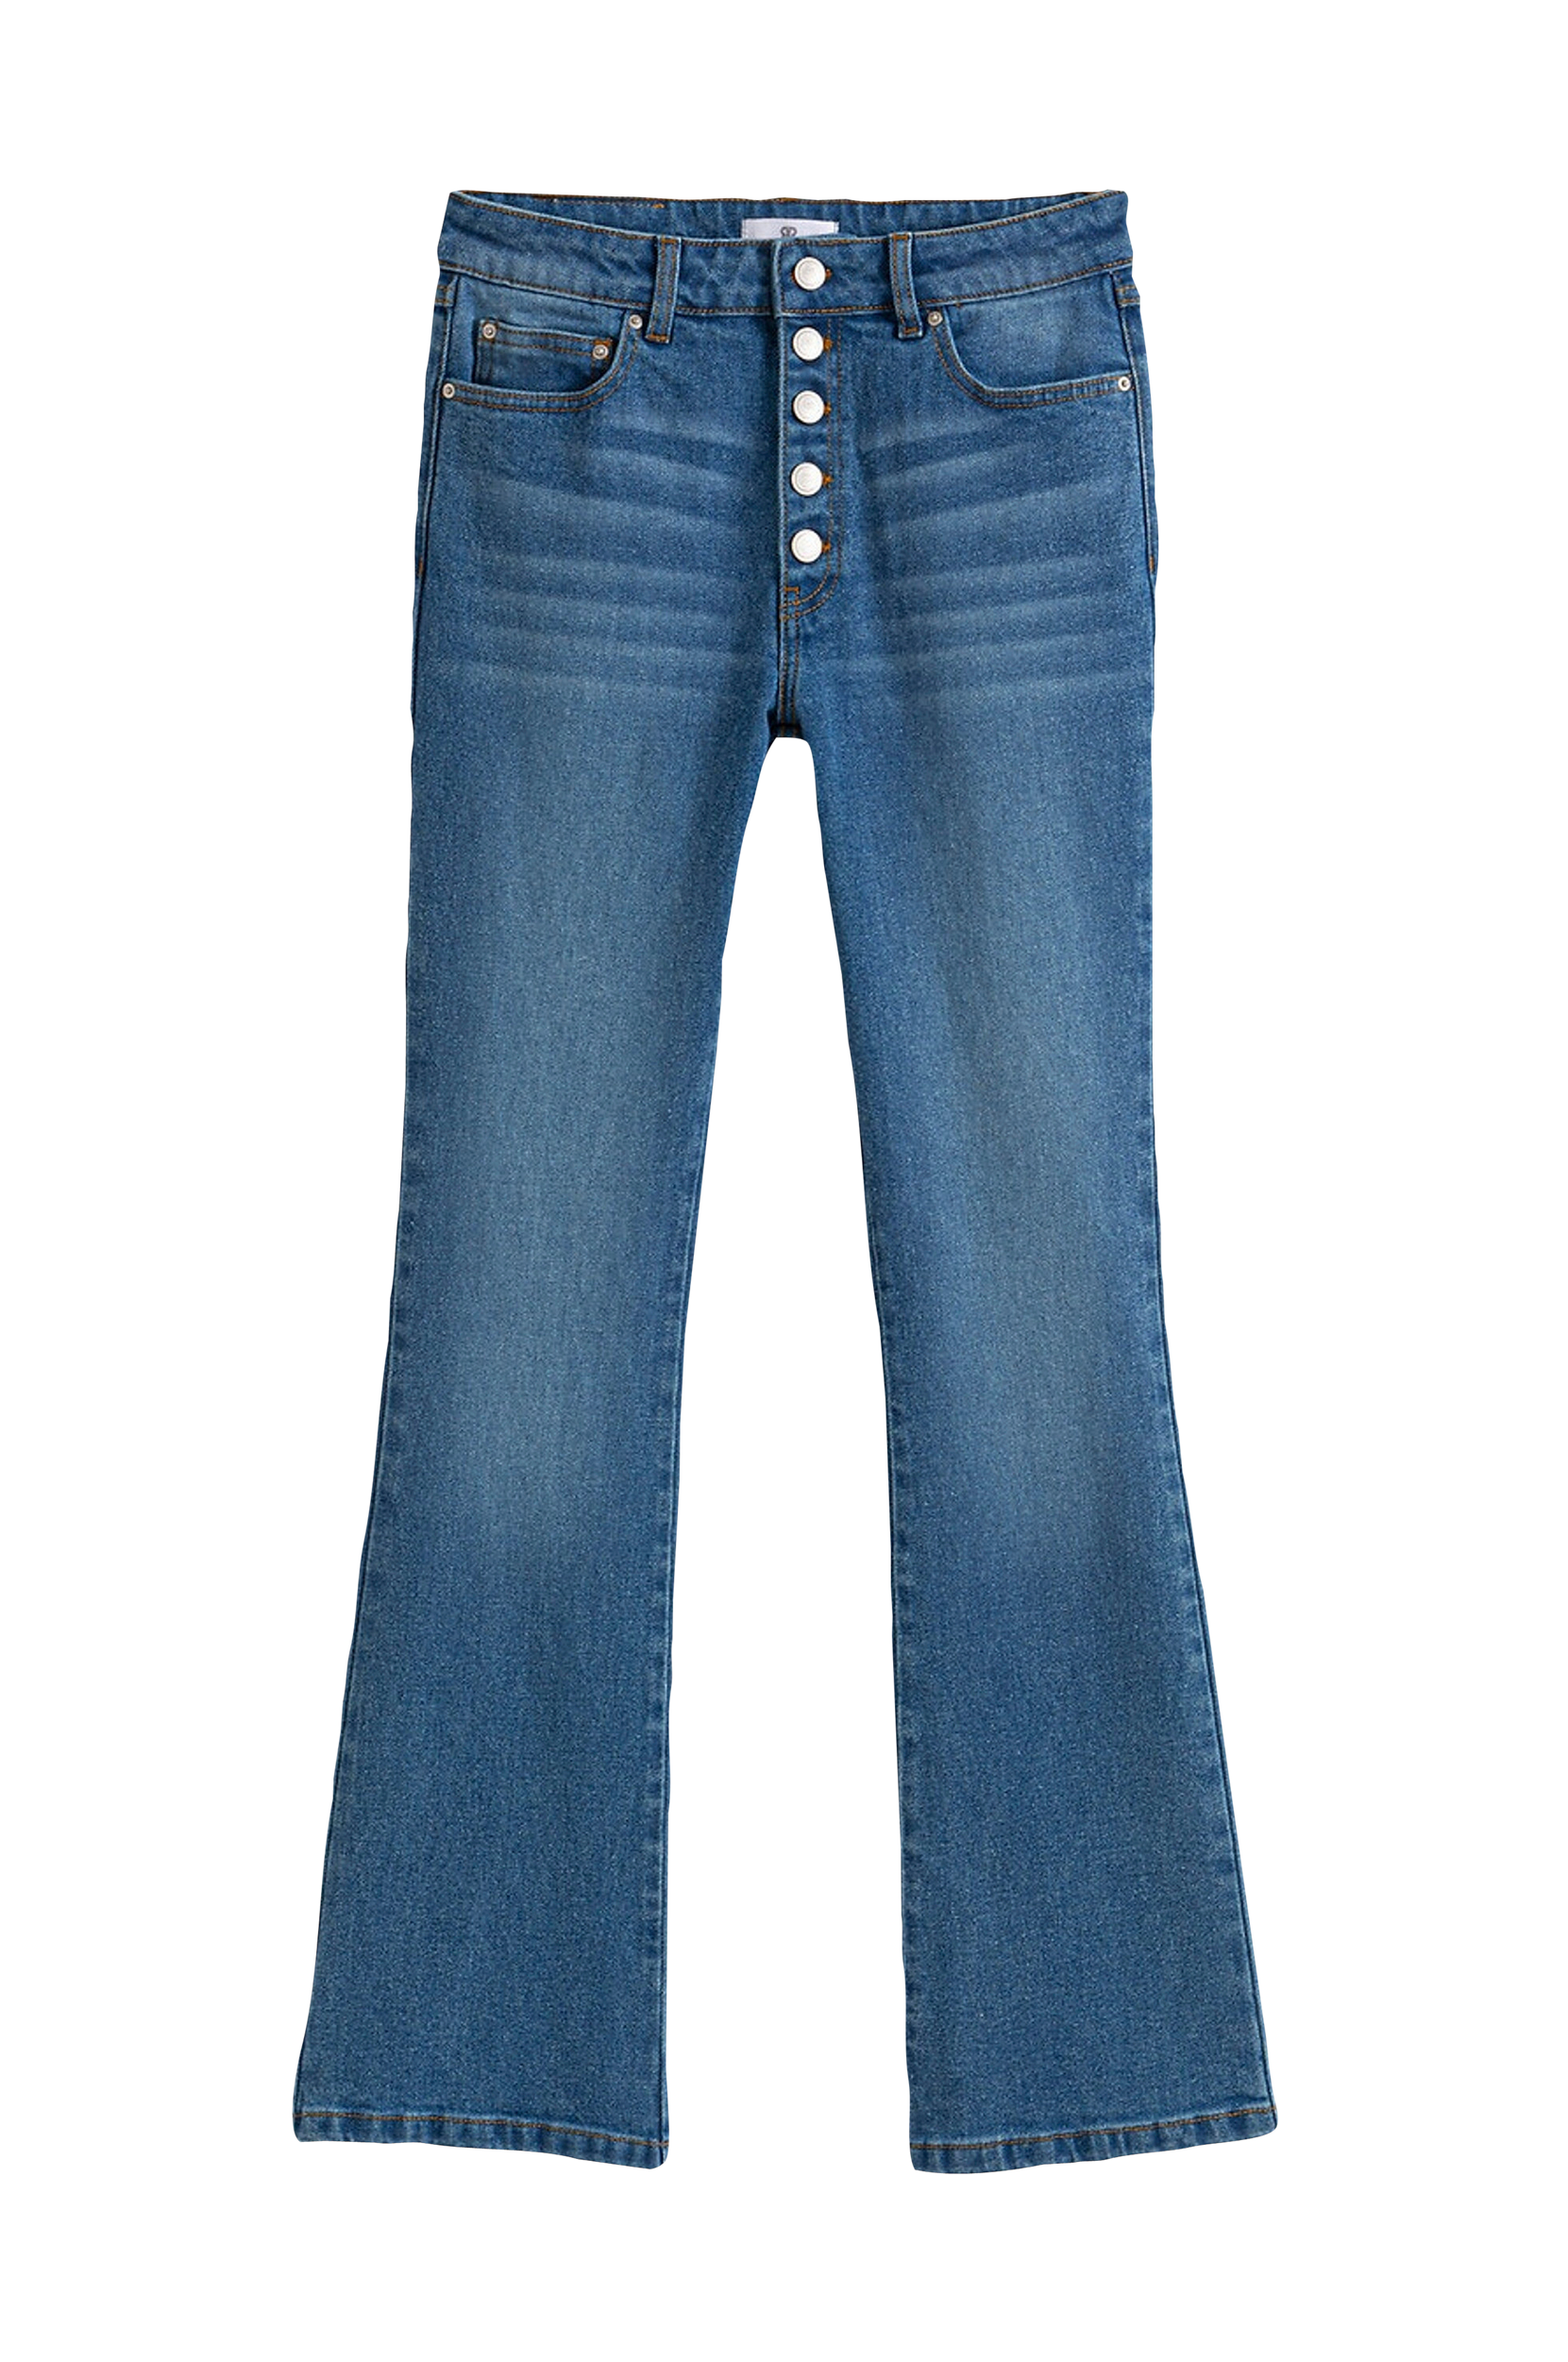 La Redoute - Korte bootcut jeans med synlig knaplukning - Blå - 32